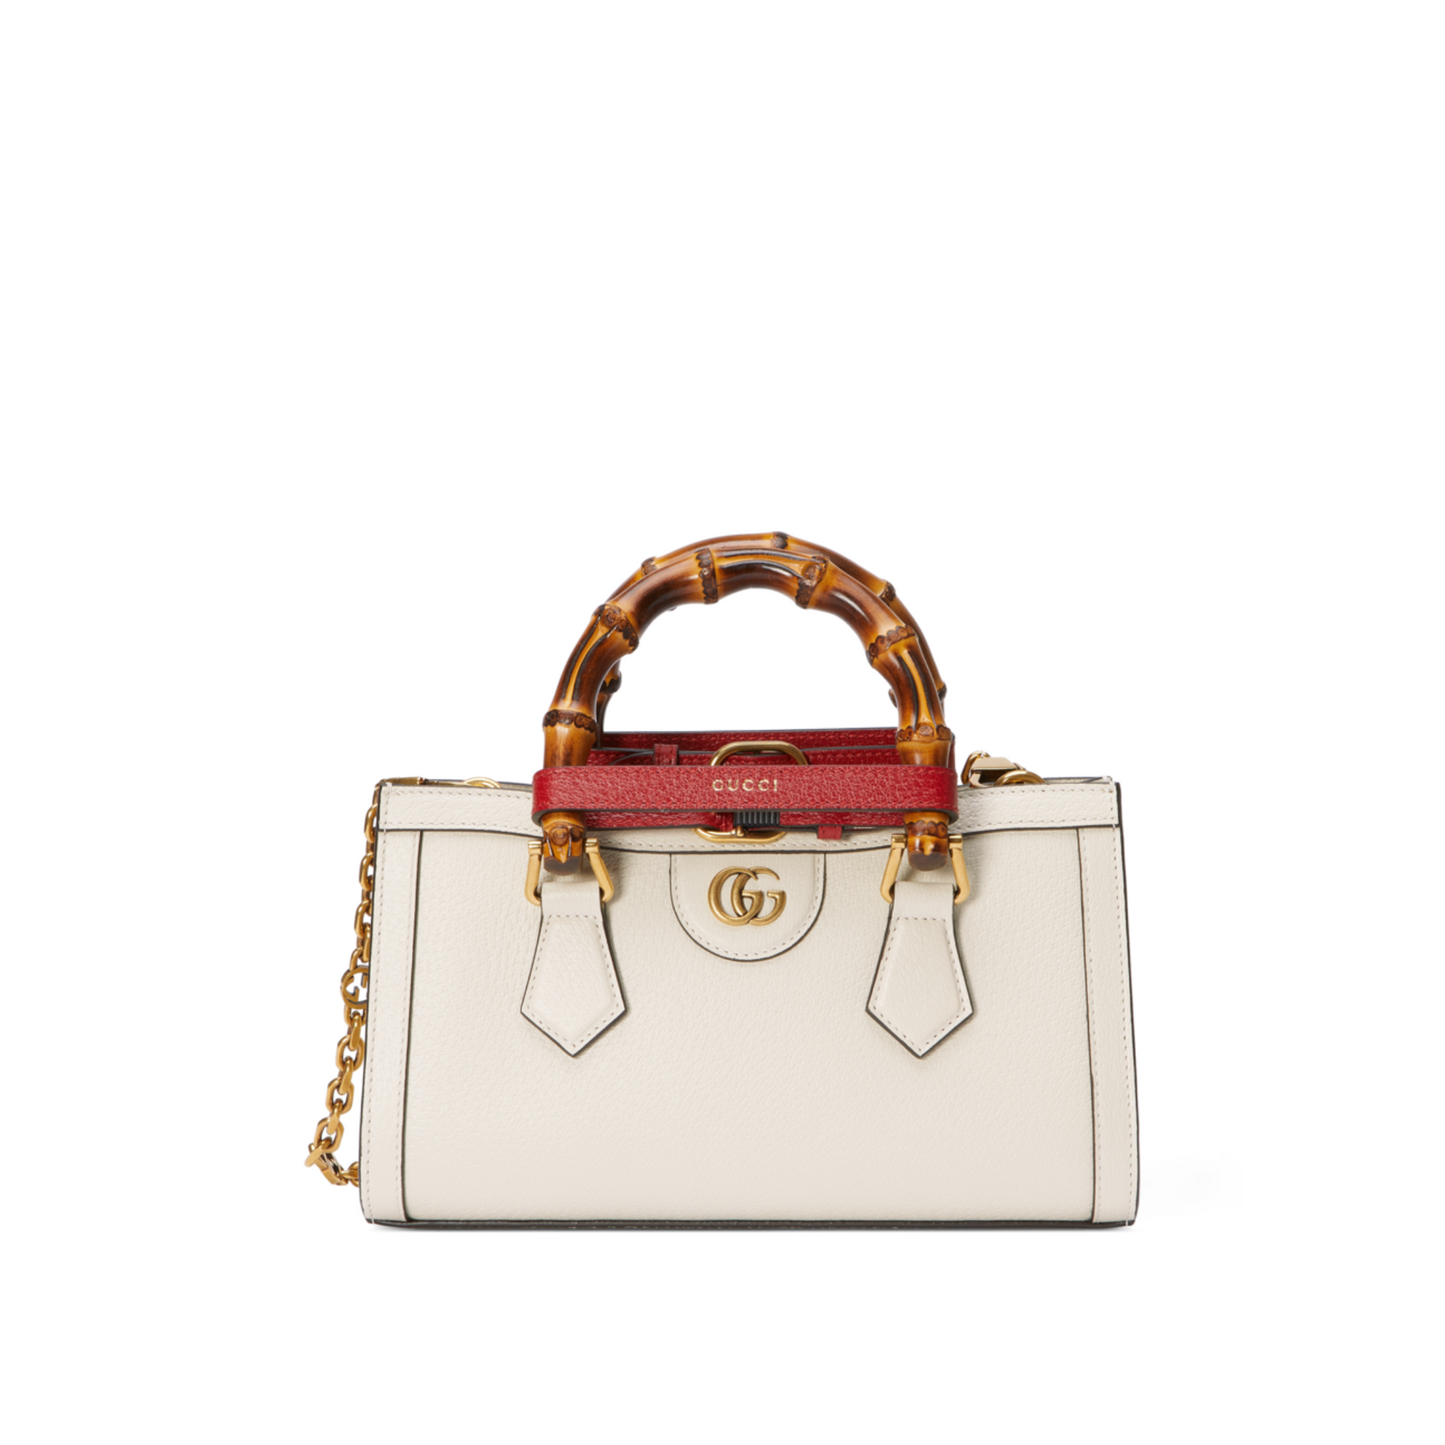 Gucci Diana Small Shoulder Bag